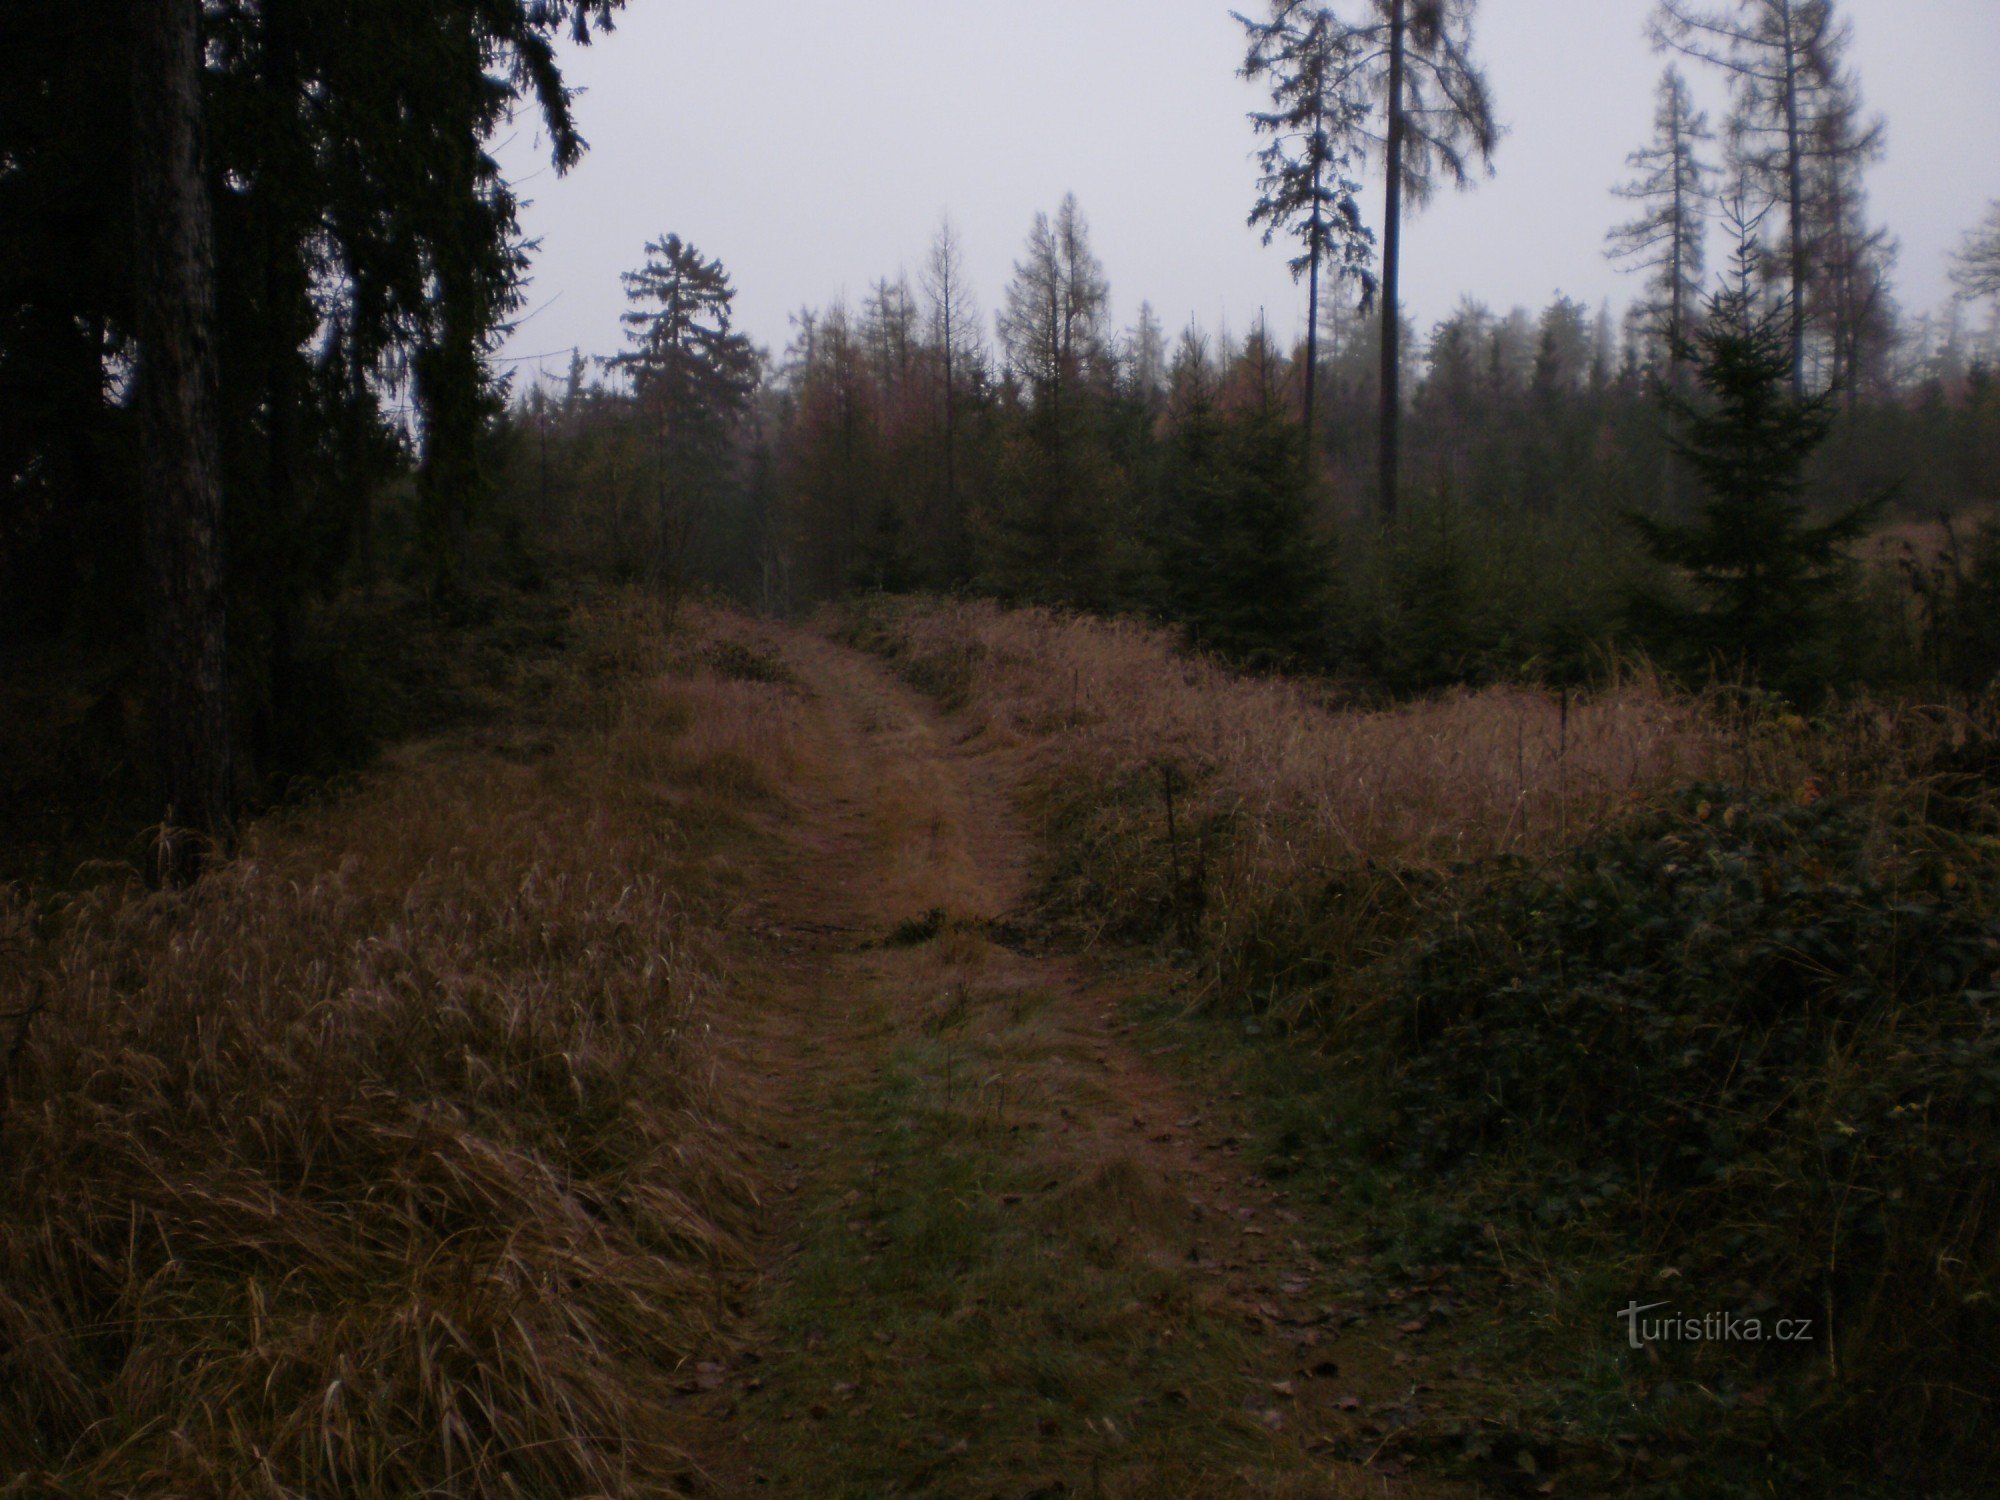 stien gennem skoven